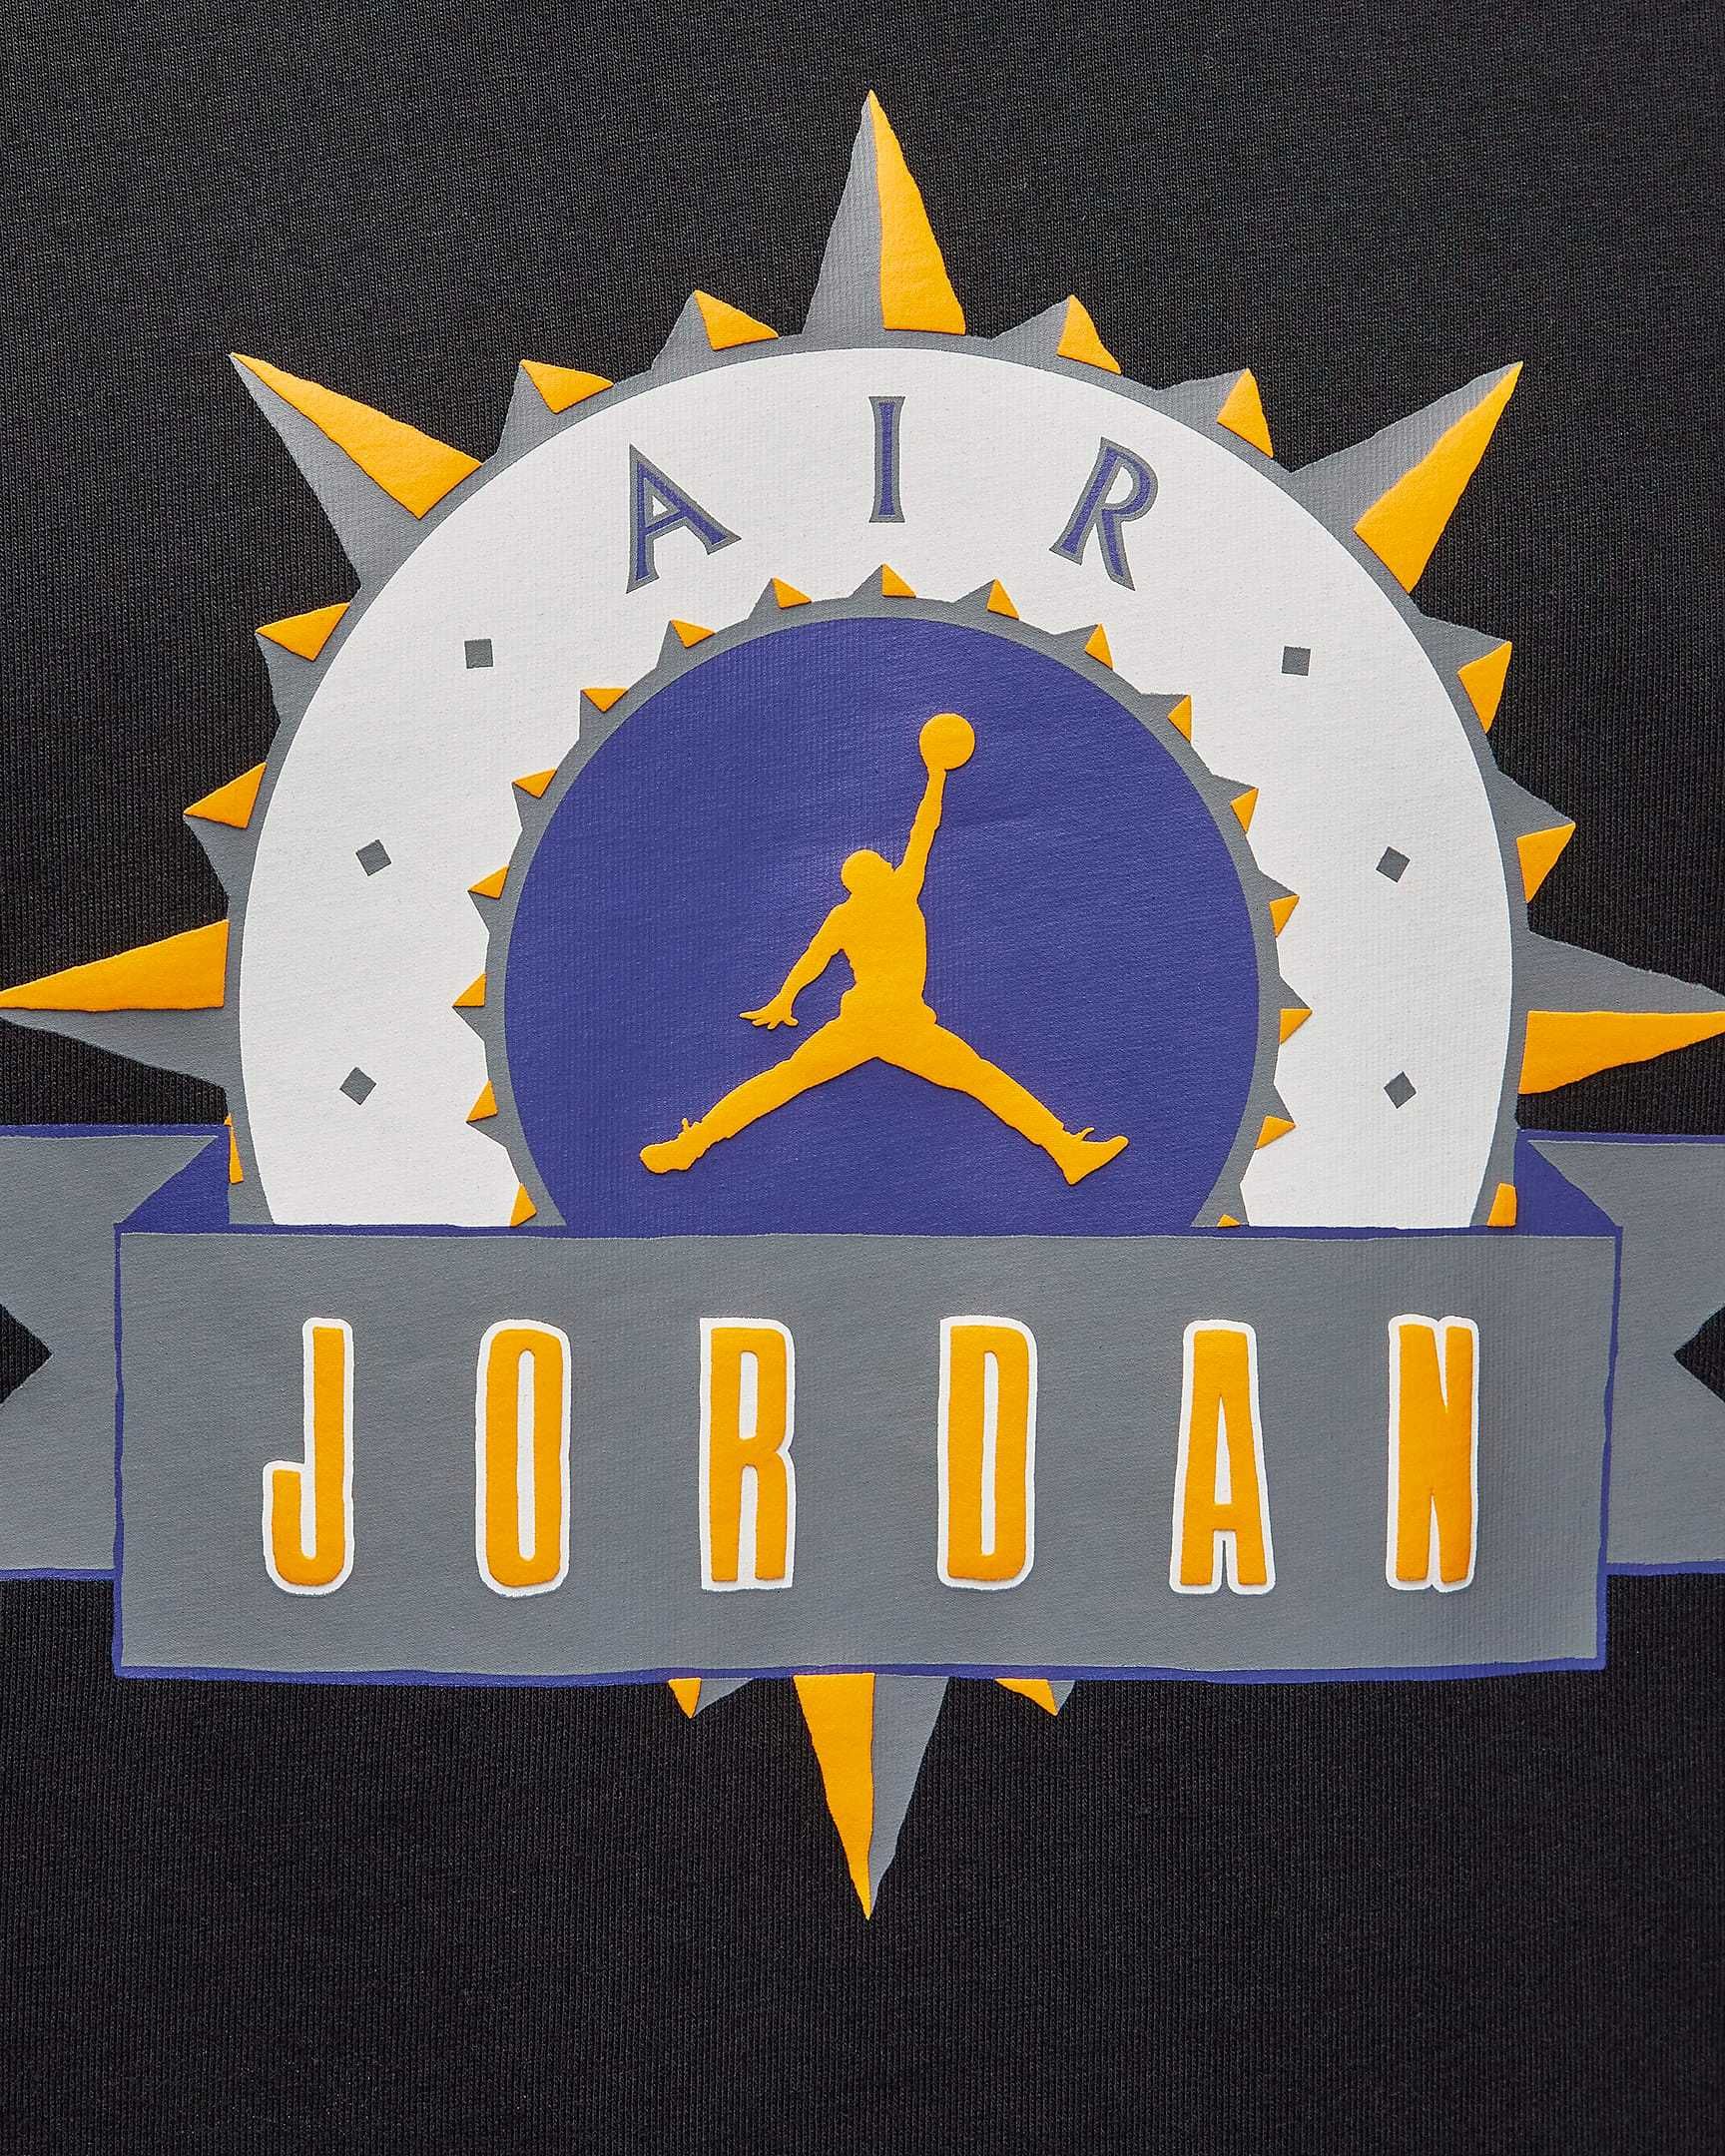 Мужская футболка Jordan retro черная футболка с принтом Джордан